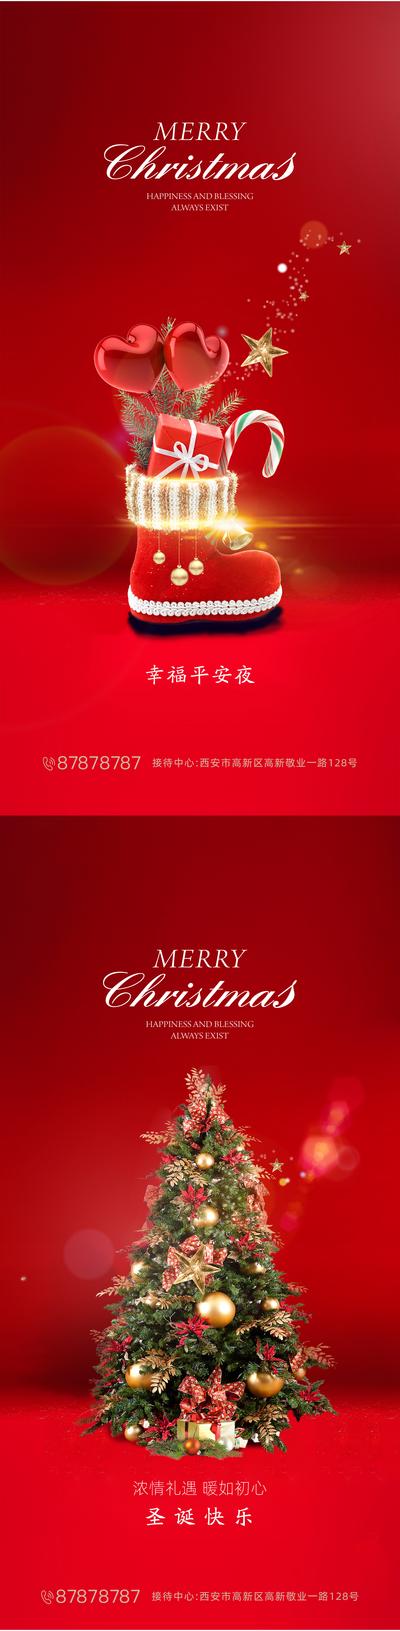 南门网 海报 西方节日 圣诞节  平安夜 靴子 圣诞树  红色 系列